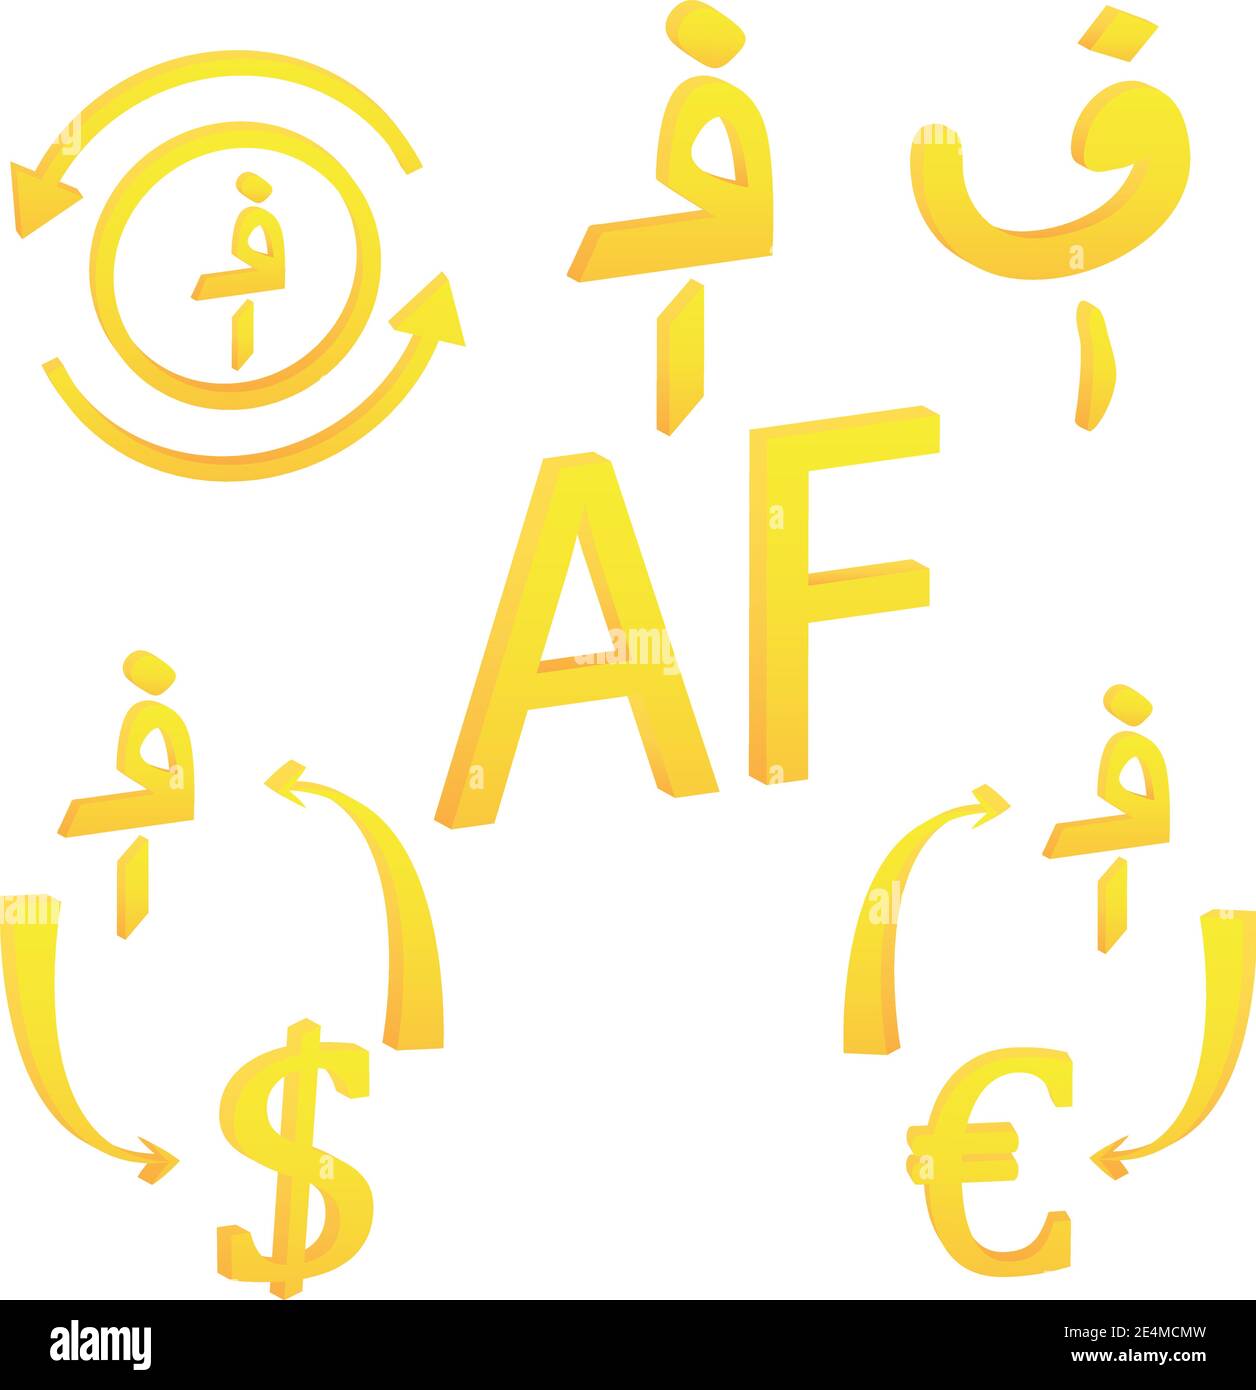 Afghanische Afghani von Afghanistan Währung Symbol Vektor-Illustration Stock Vektor